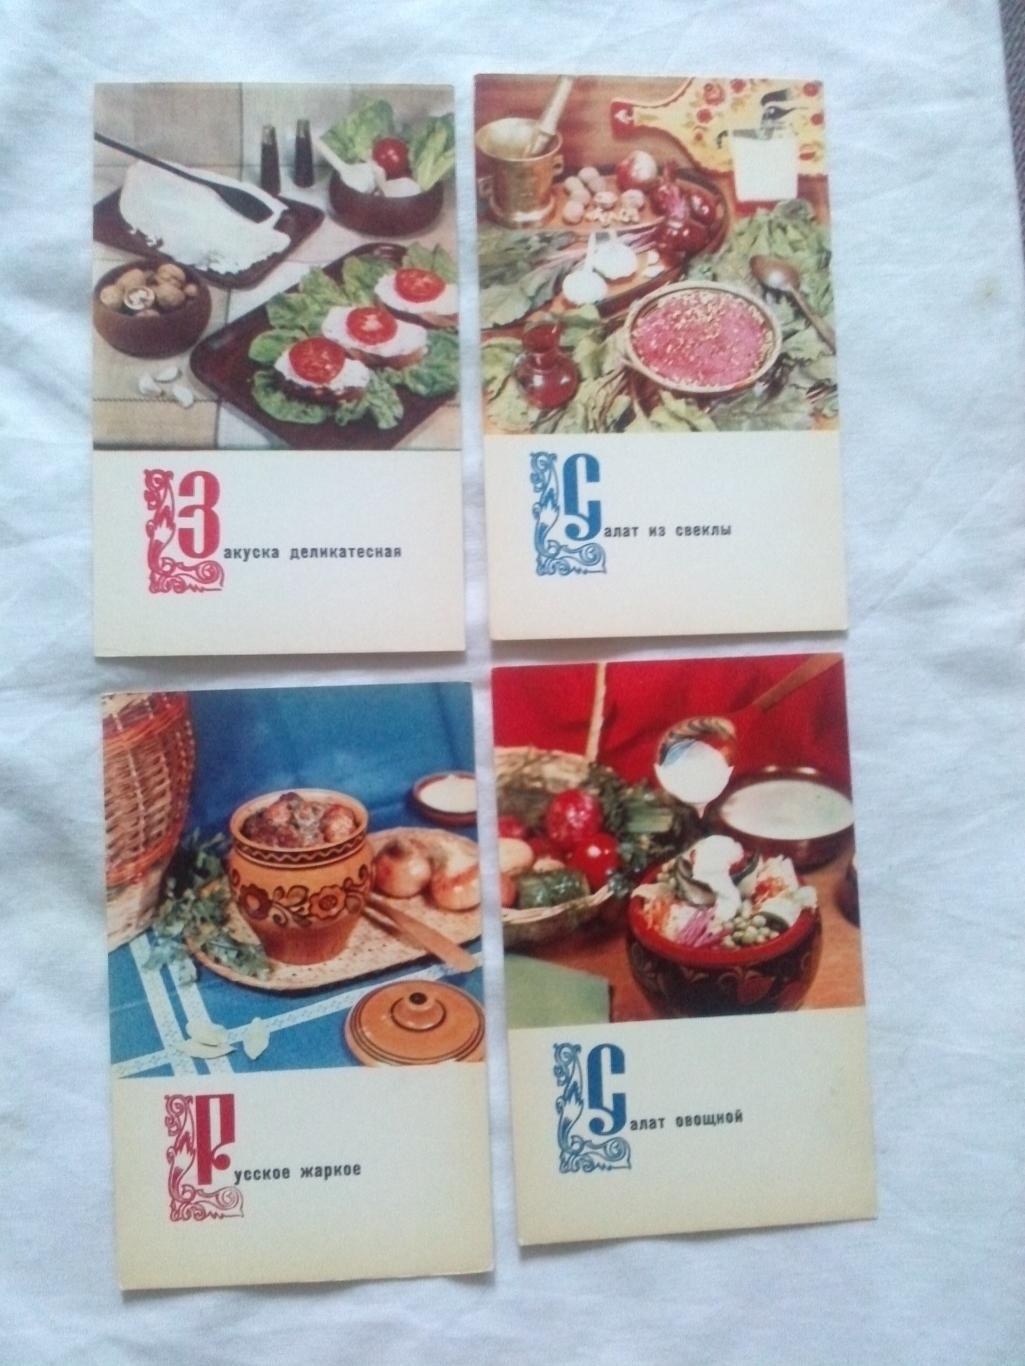 Блюда русской кухни 1970 г. полный набор - 15 открыток (Кулинария , рецепты) 2